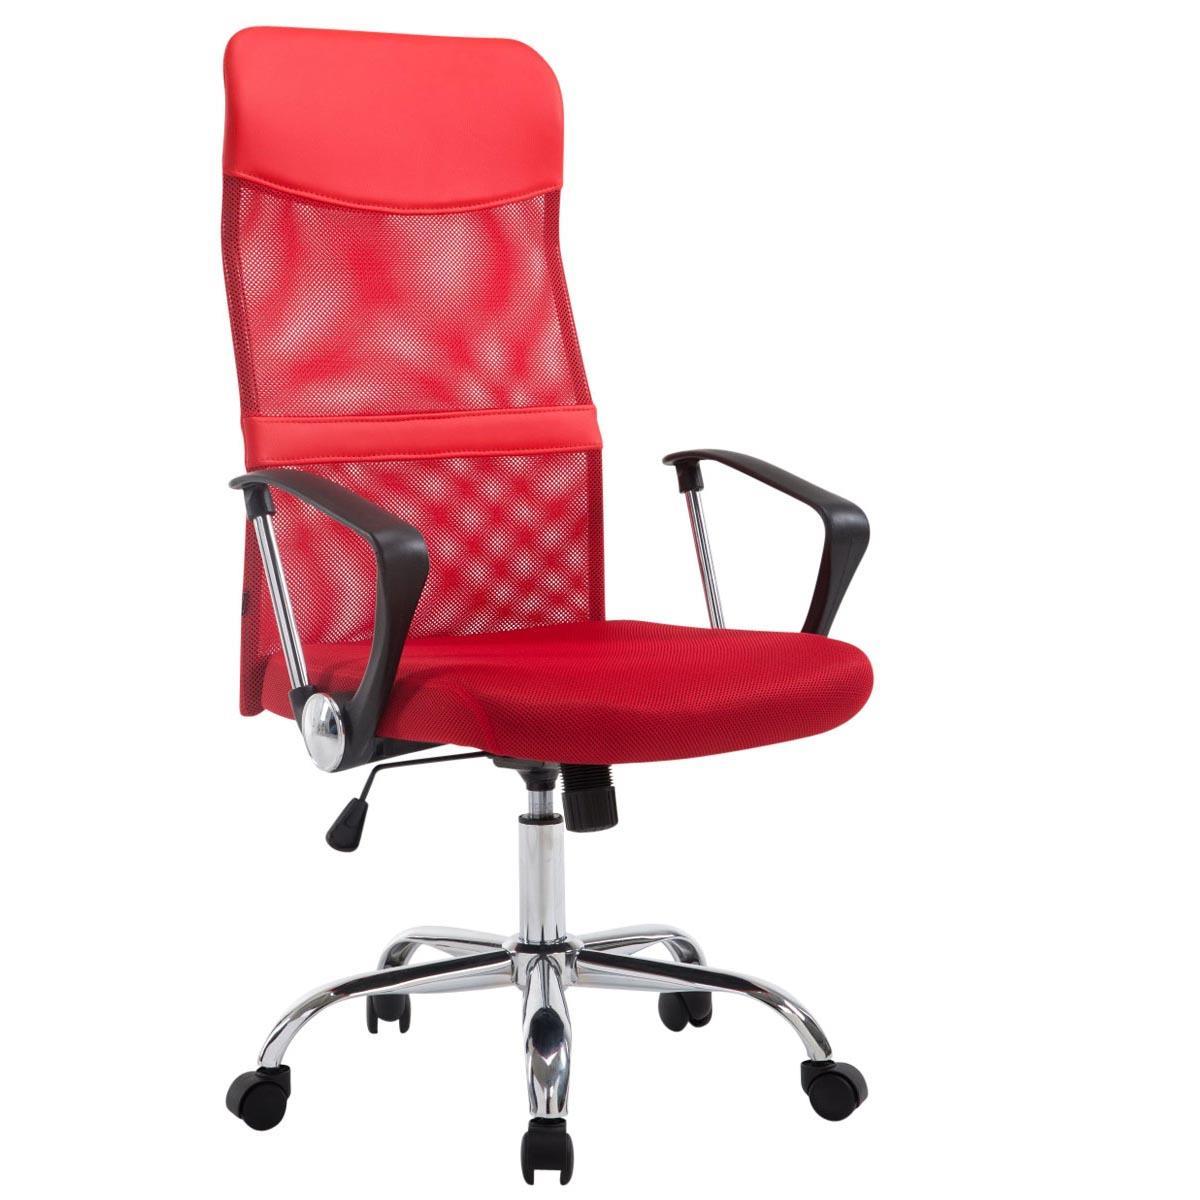 Chaise de Bureau ASPEN XL, Maille Respirable, Grand rembourrage, Résistant jusqu'à 150 kg, Rouge